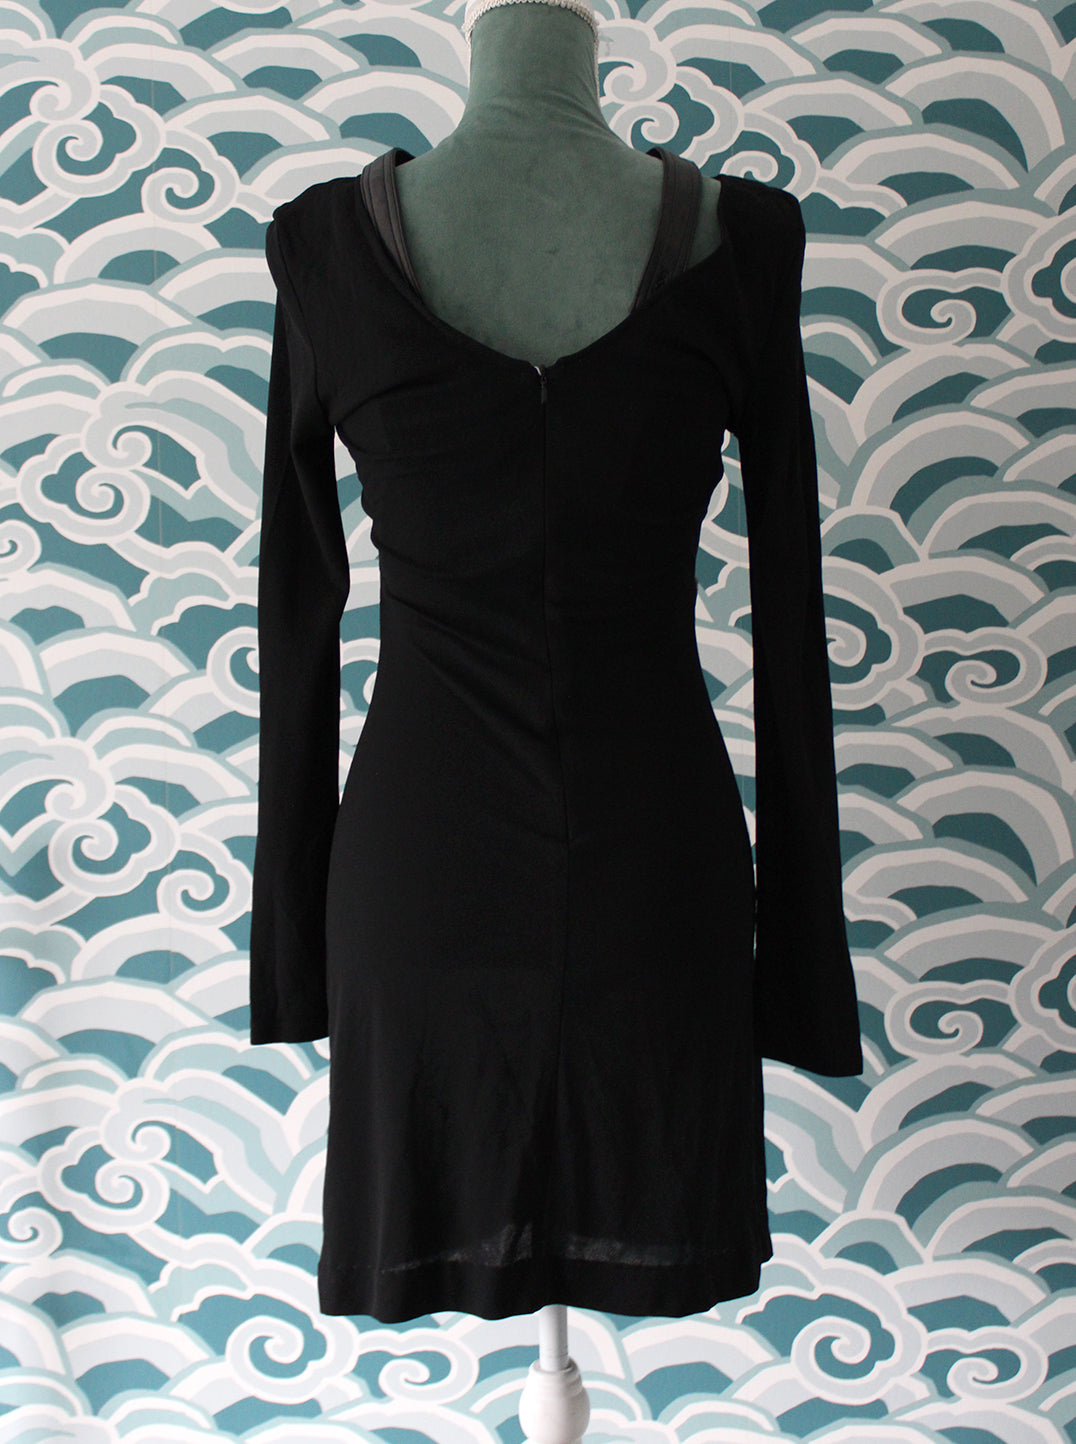 Black & Leopard Print Dress